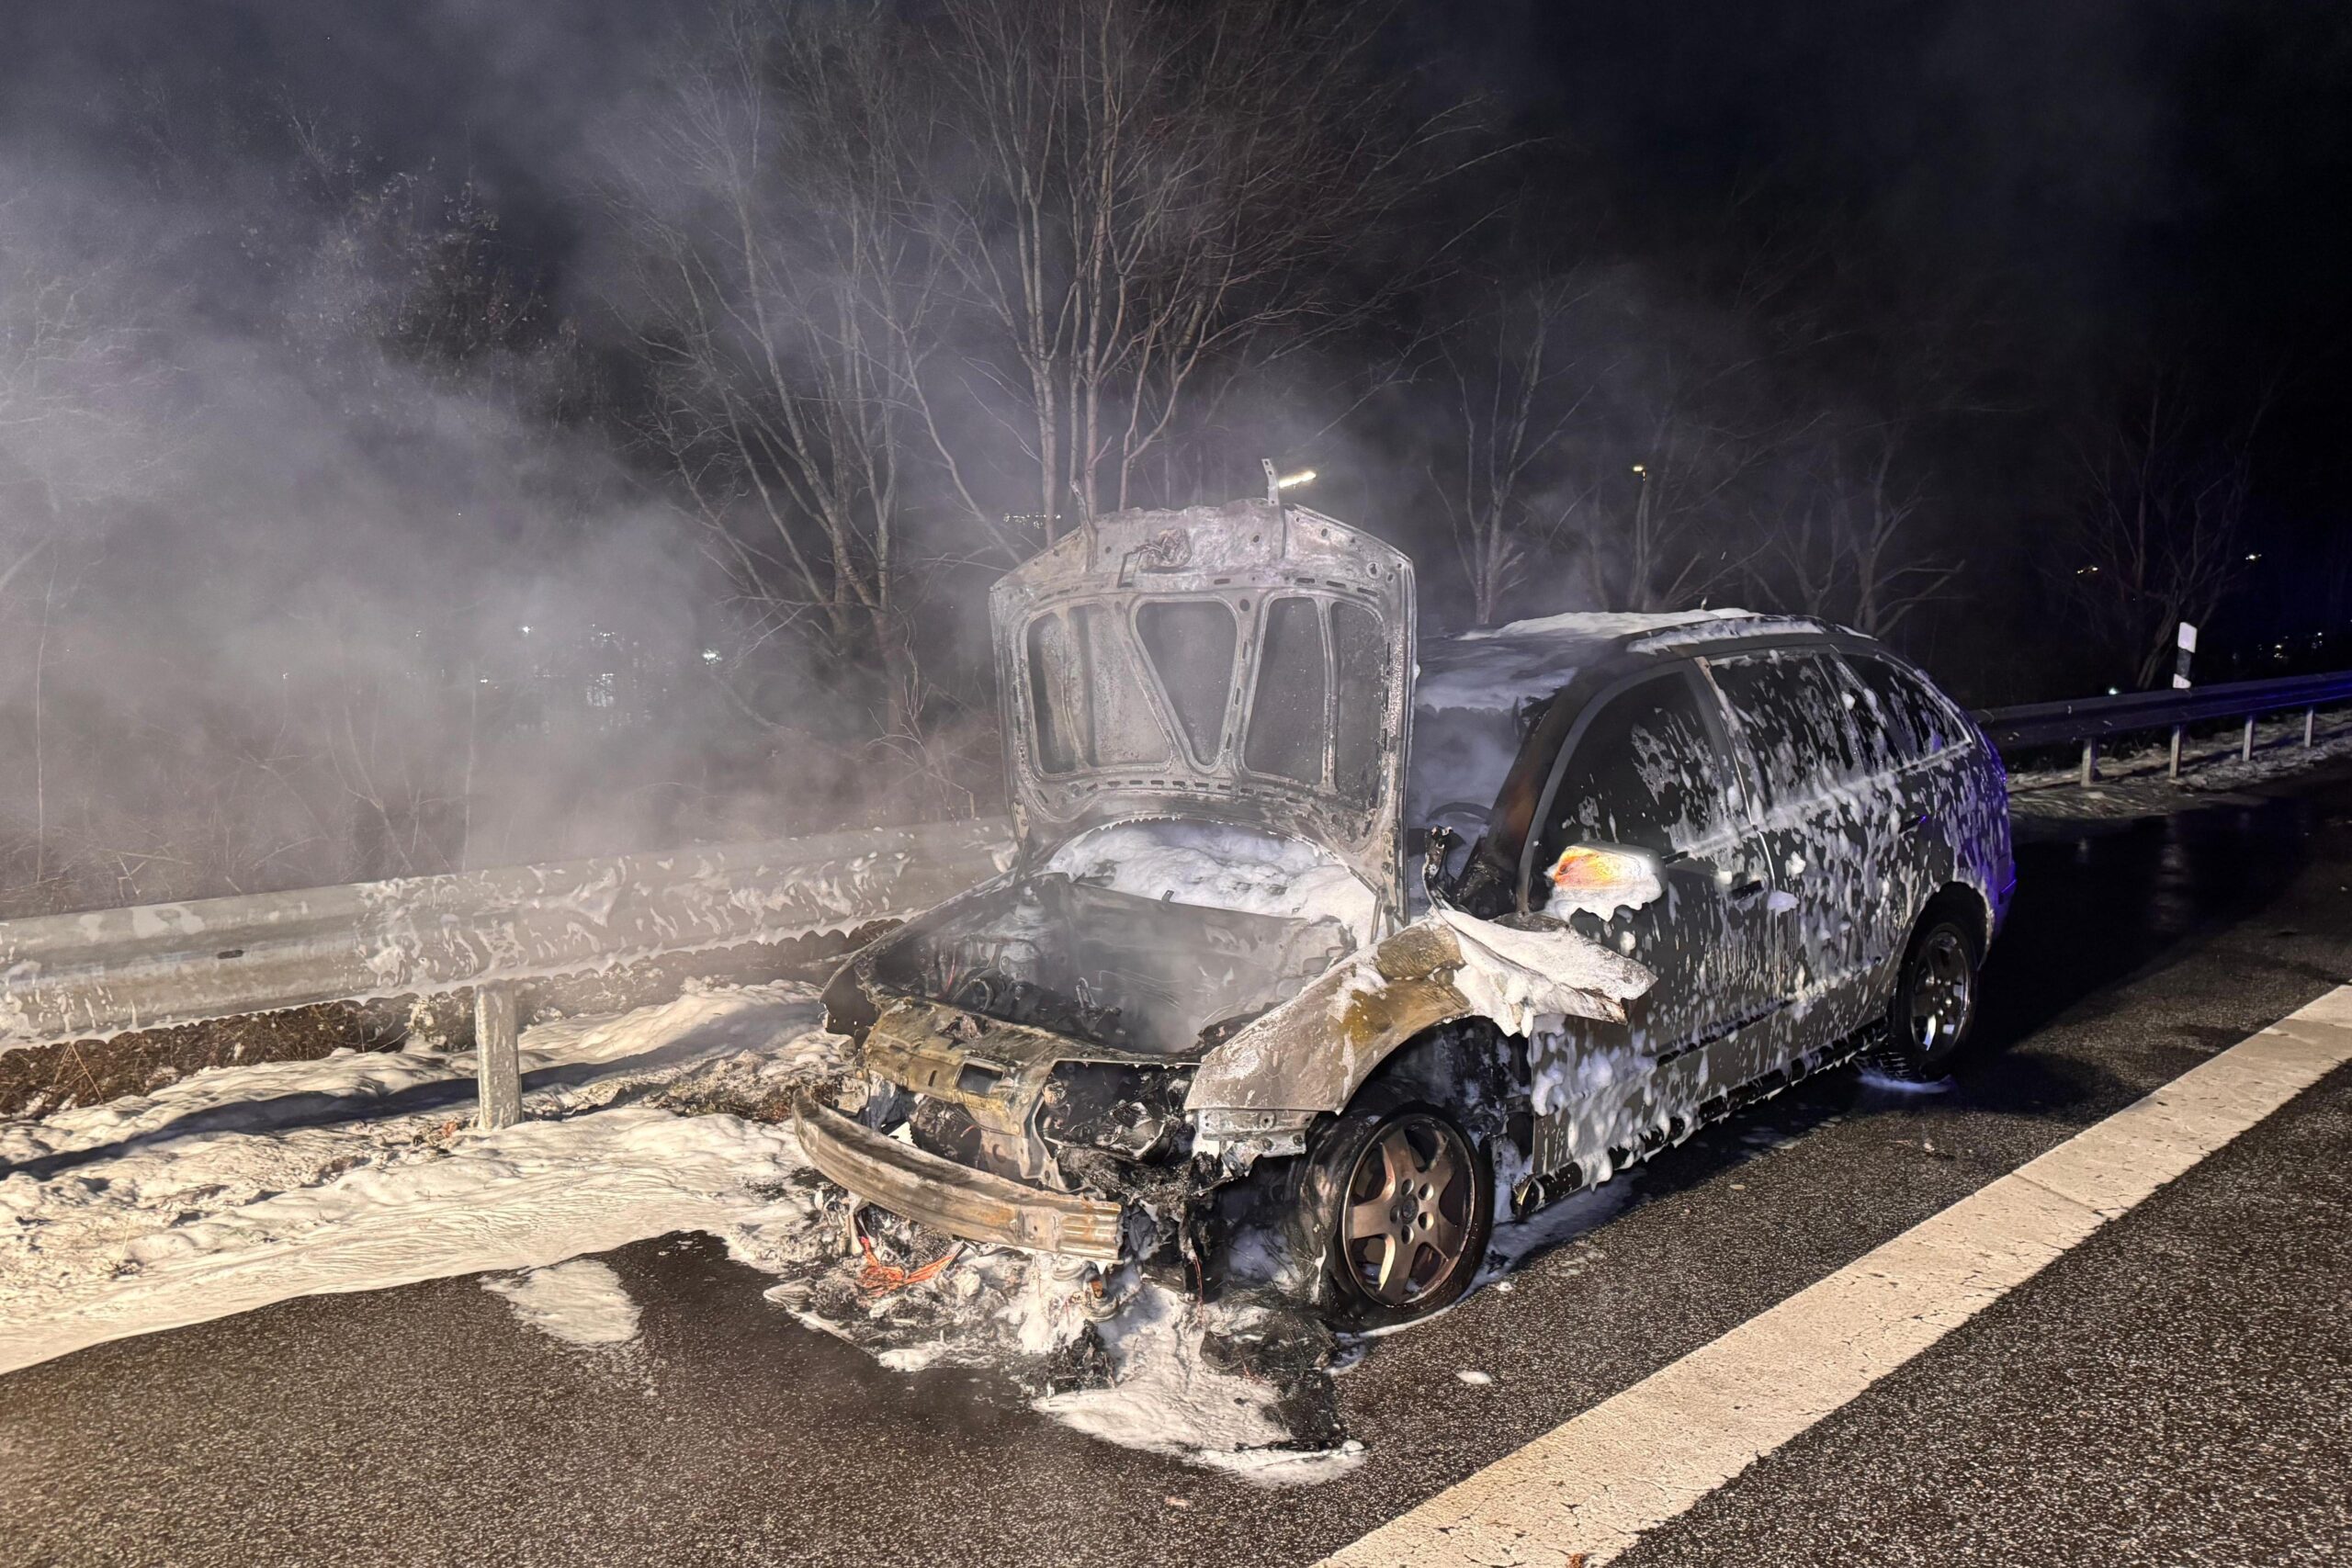 Der Skoda steht am Straßenrand, Front und Motorrad sind verbrannt, das Auto ist mit Löschschaum bedeckt.